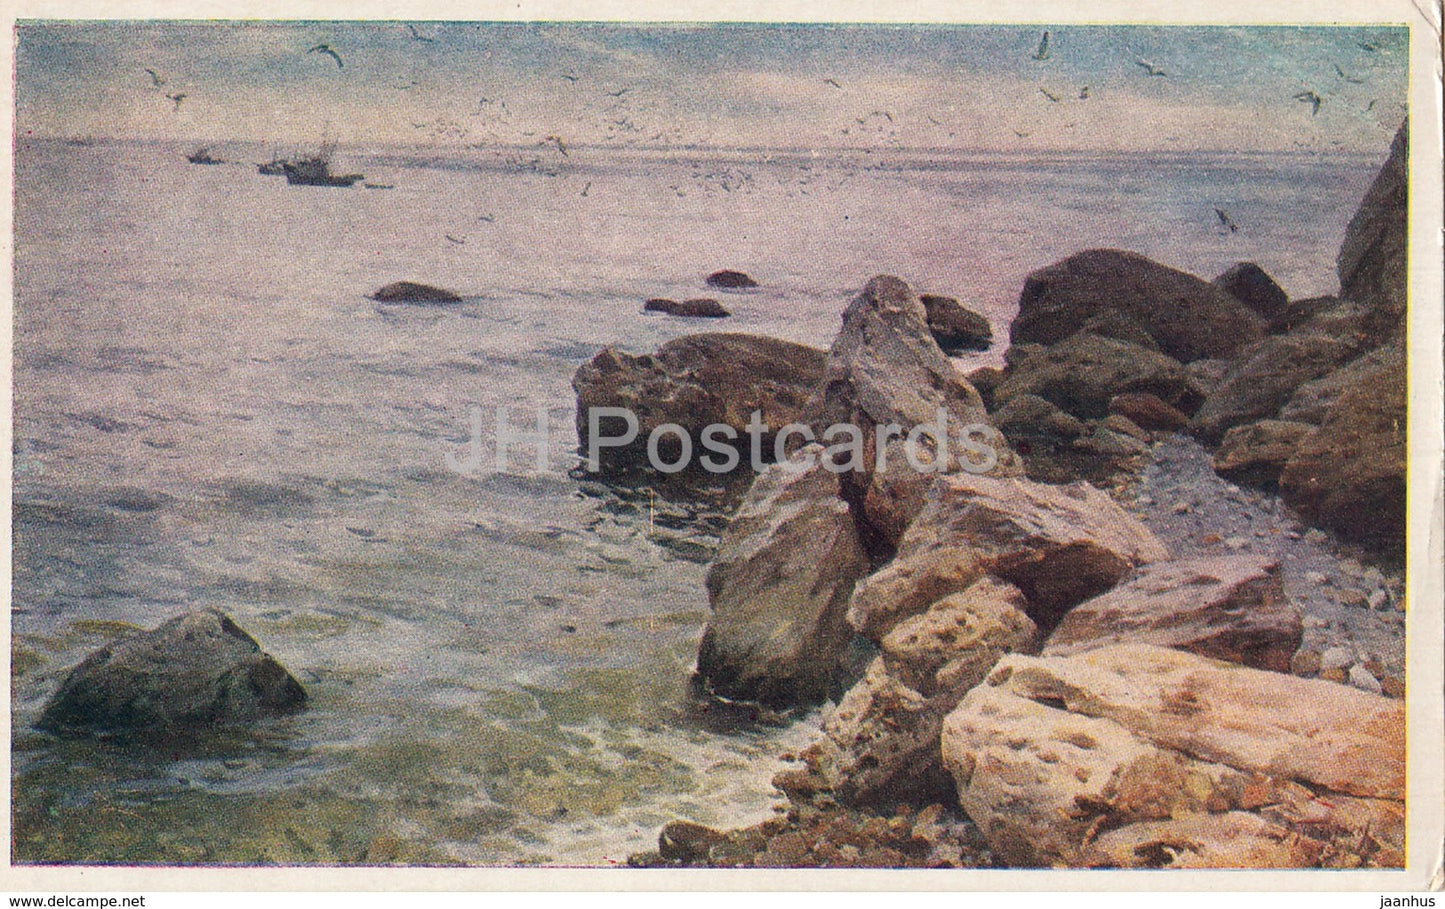 painting by V. Puzirkov - Calm Sea - Ukraine art - 1954 - Ukraine USSR - unused - JH Postcards